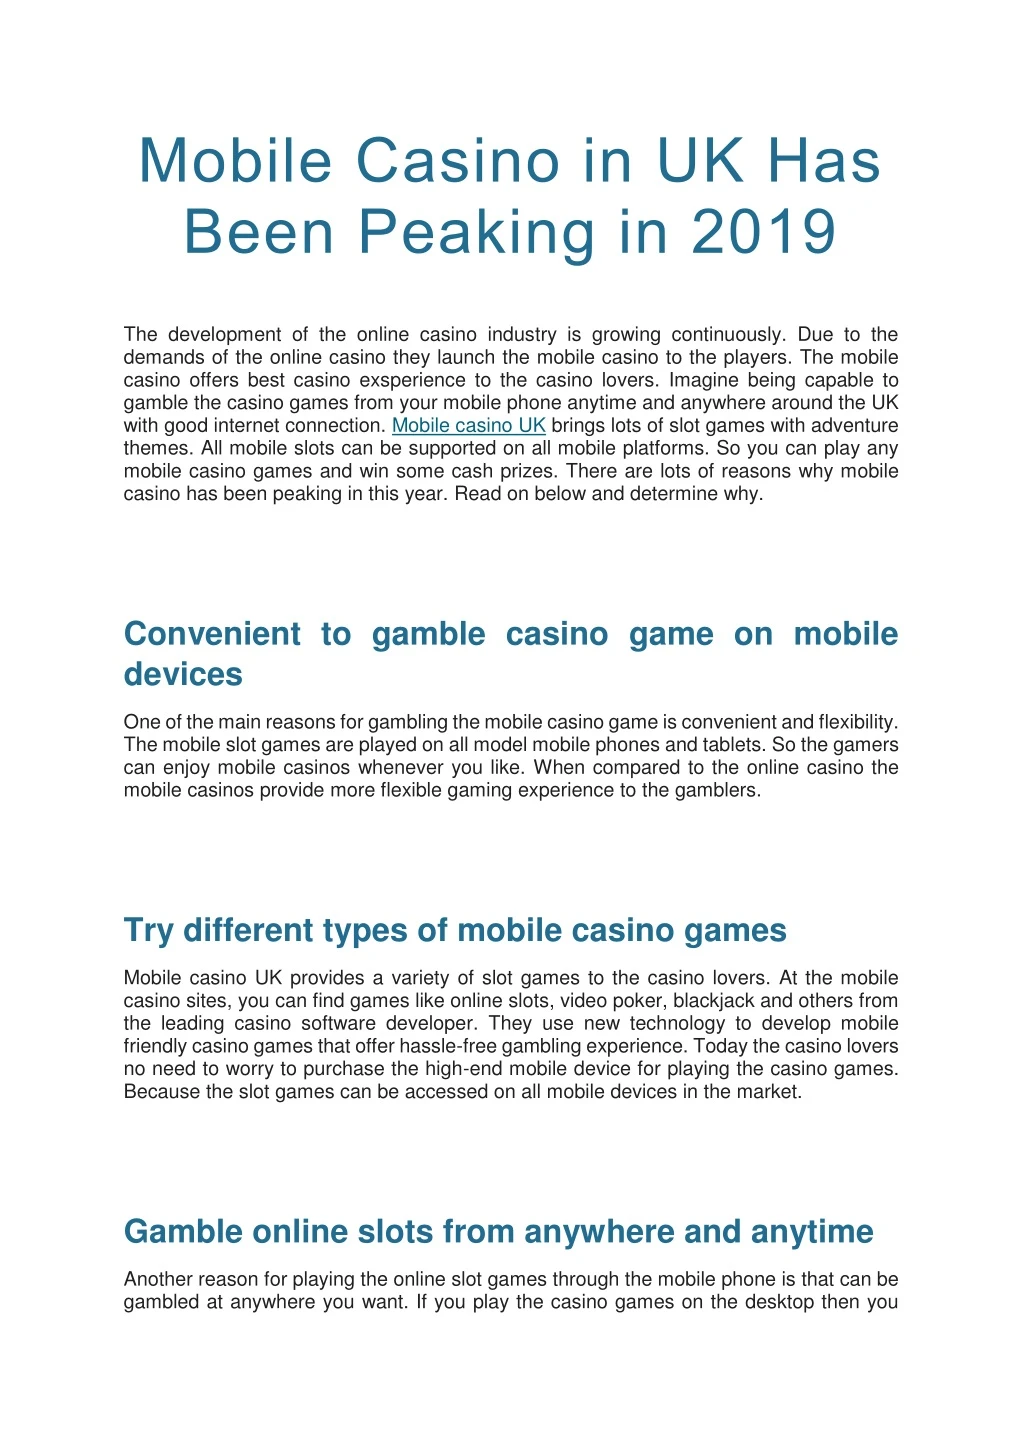 mobile casino in uk has been peaking in 2019